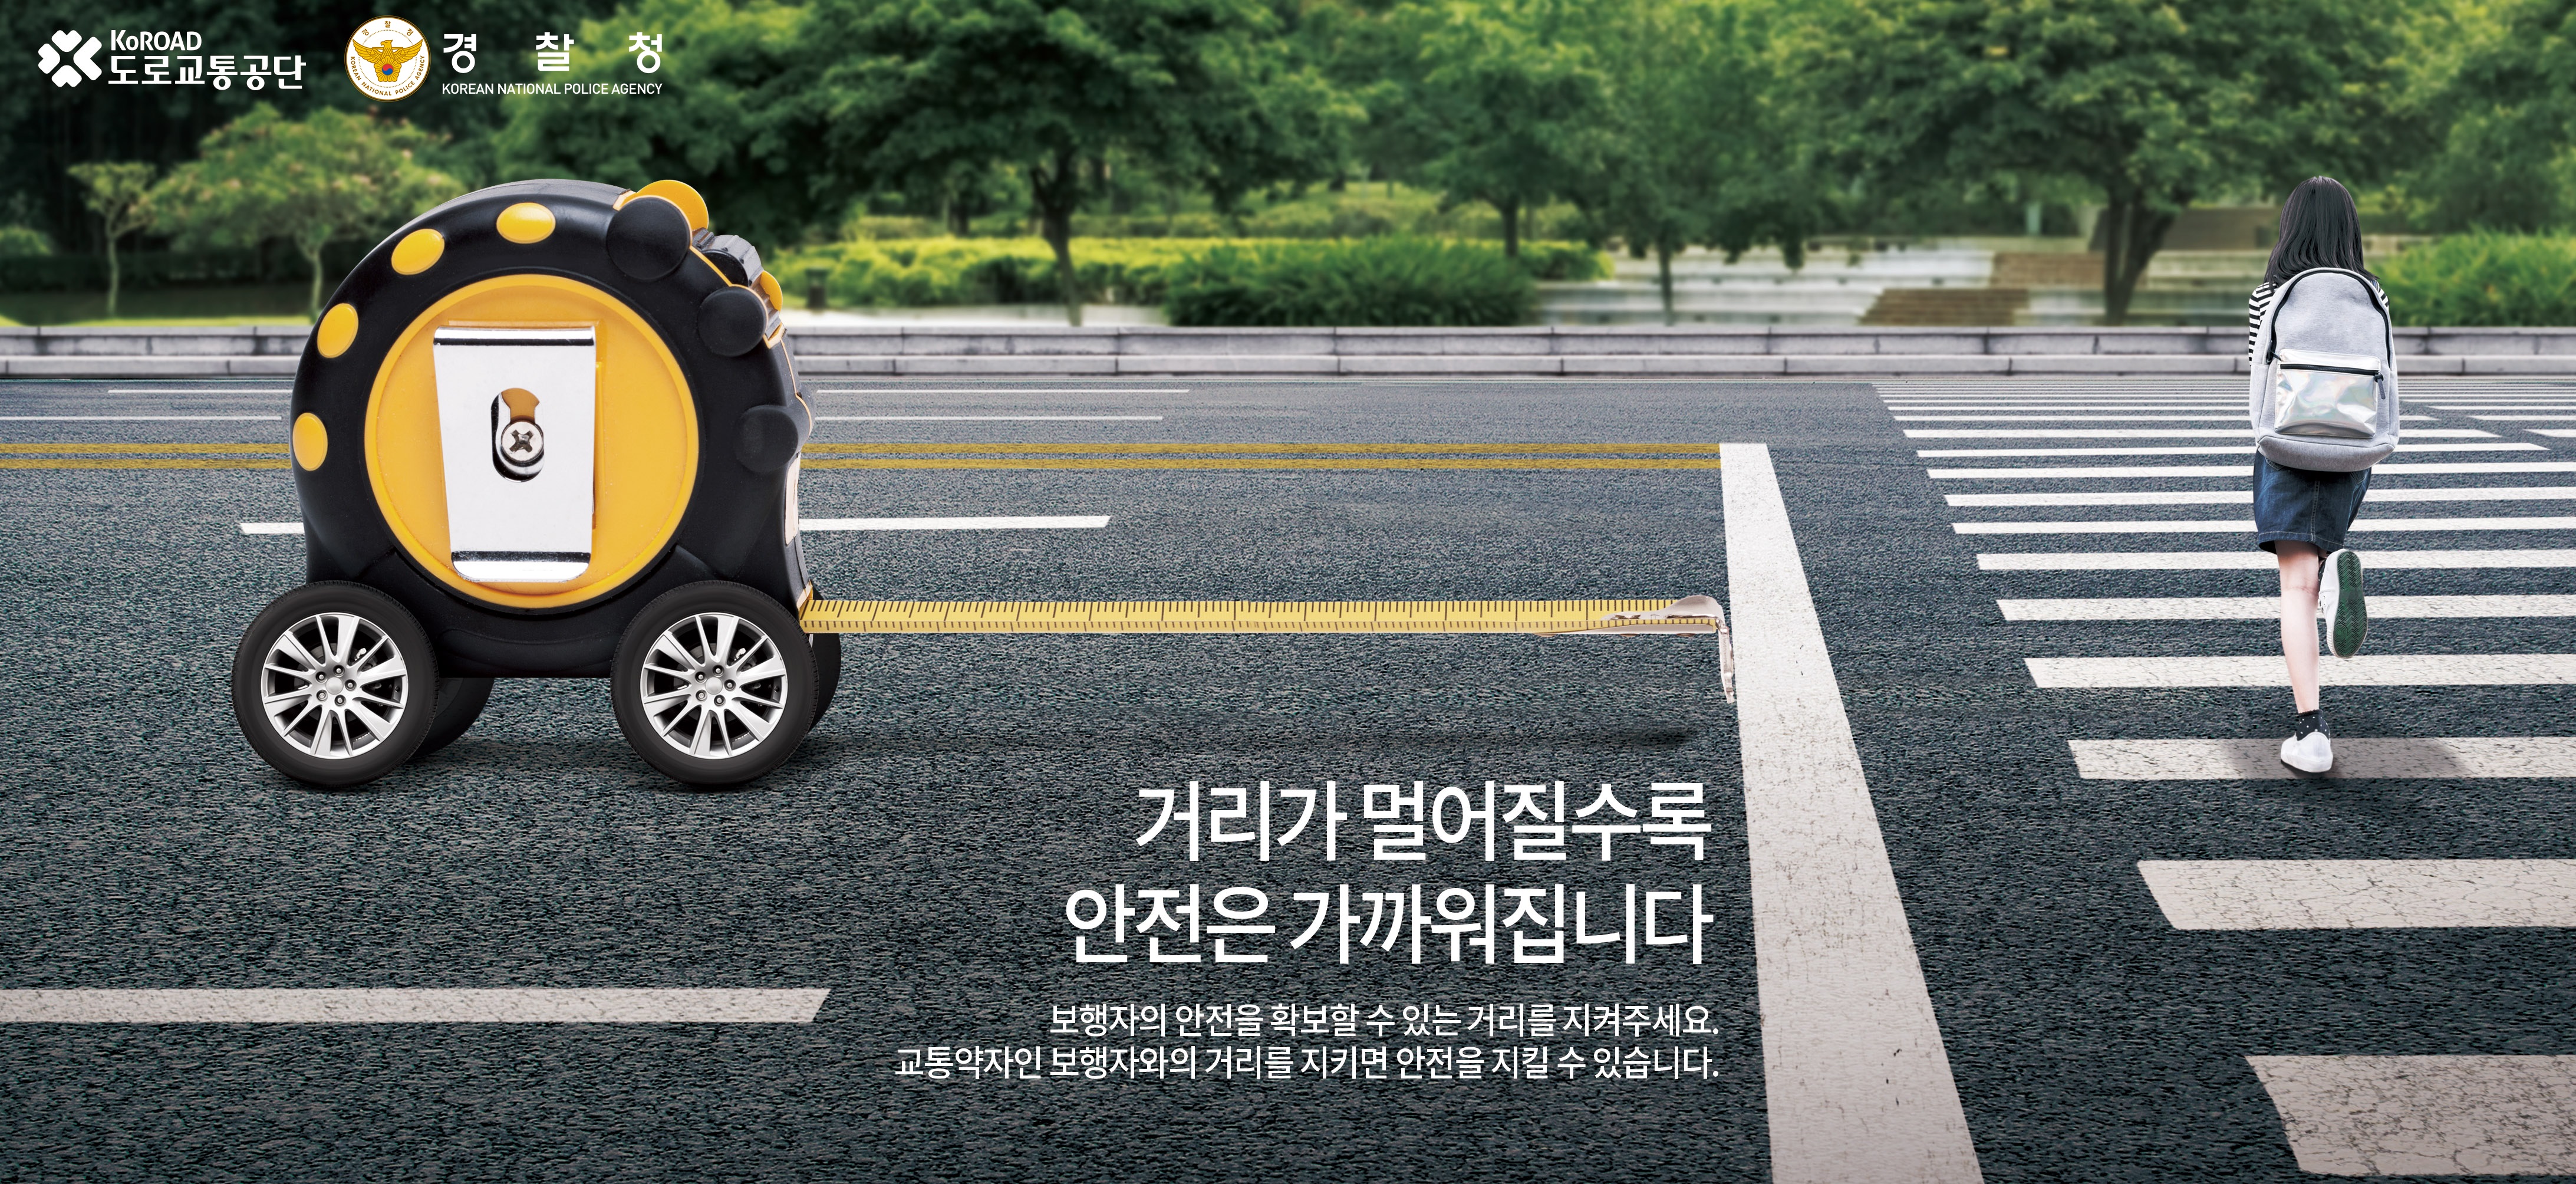 [도로교통공단]안전운전 홍보 캠페인 " (횡단보도정지선) 거리가 멀어질수록" 이미지1